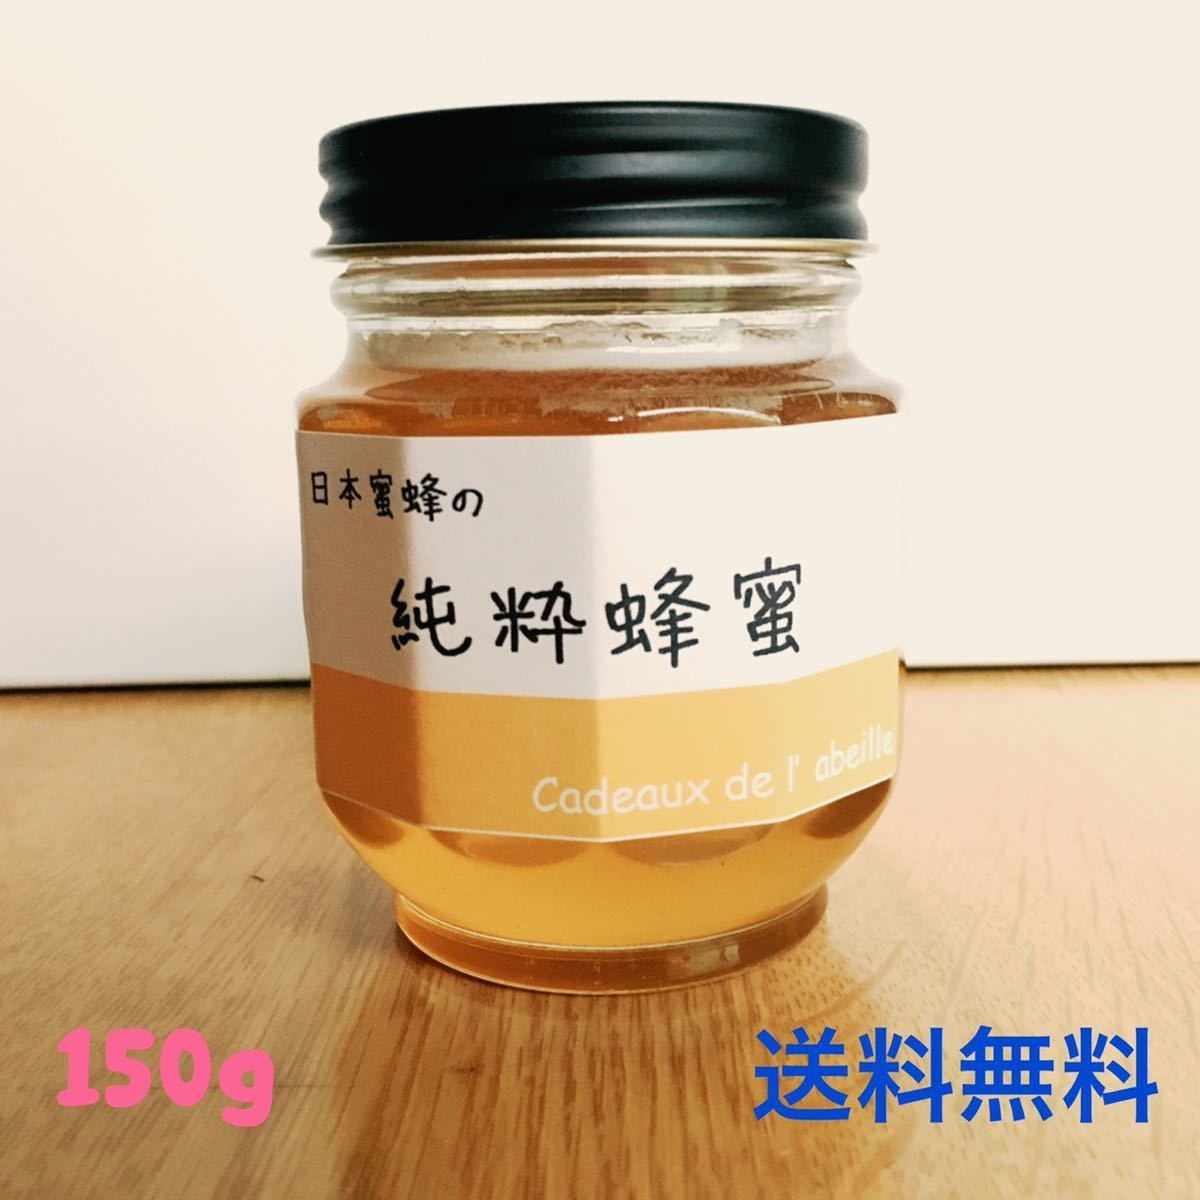 日本蜜蜂 150g/ニホンミツバチ /日本みつばち/はちみつ/ハチミツ/蜂蜜/ikefarm_画像1